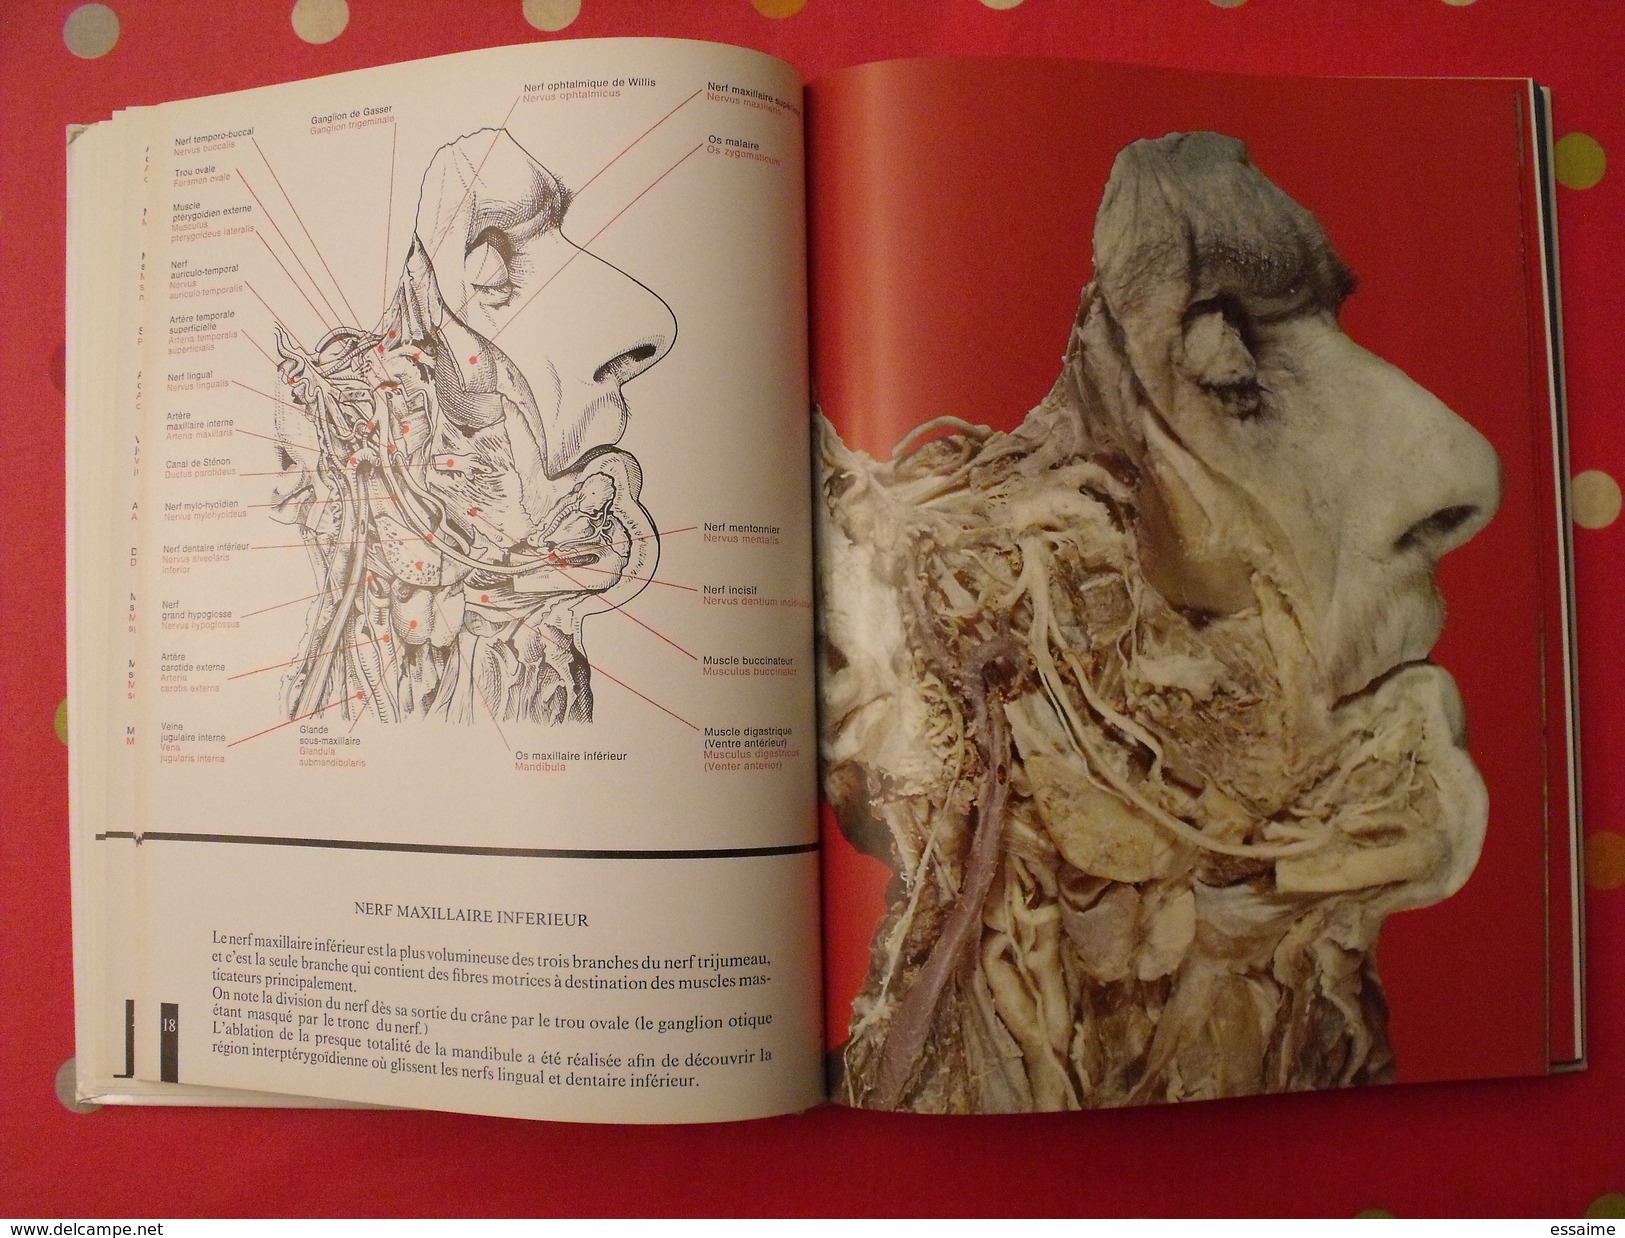 Atlas anatomique Sandoz. tête,cou,tronc,membres. 1971. superbes photos de coupes anatomiques